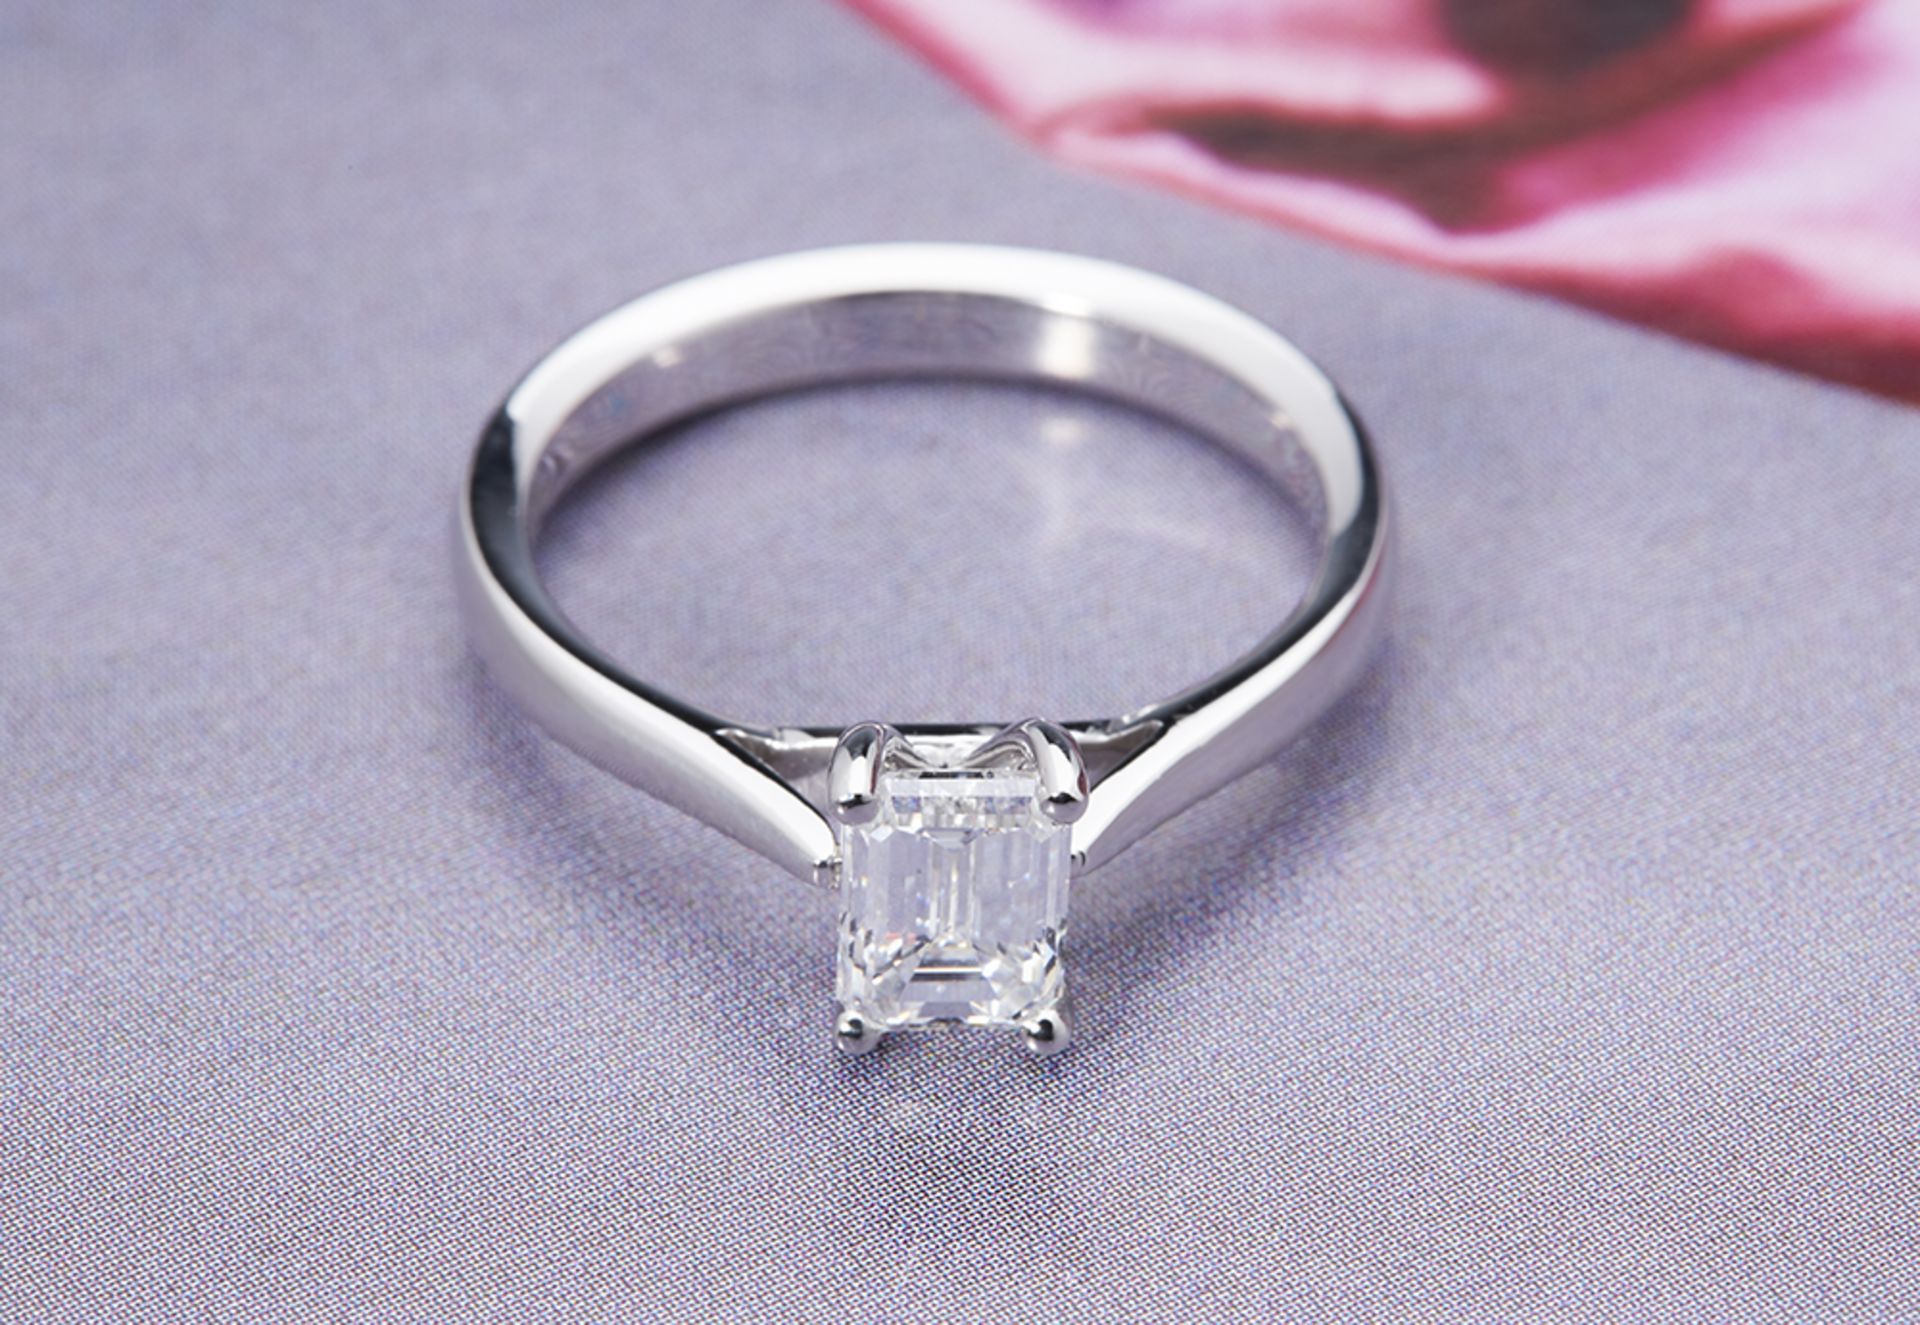 Platinum Emerald Cut 1.05ct Diamond Ring - Image 2 of 5